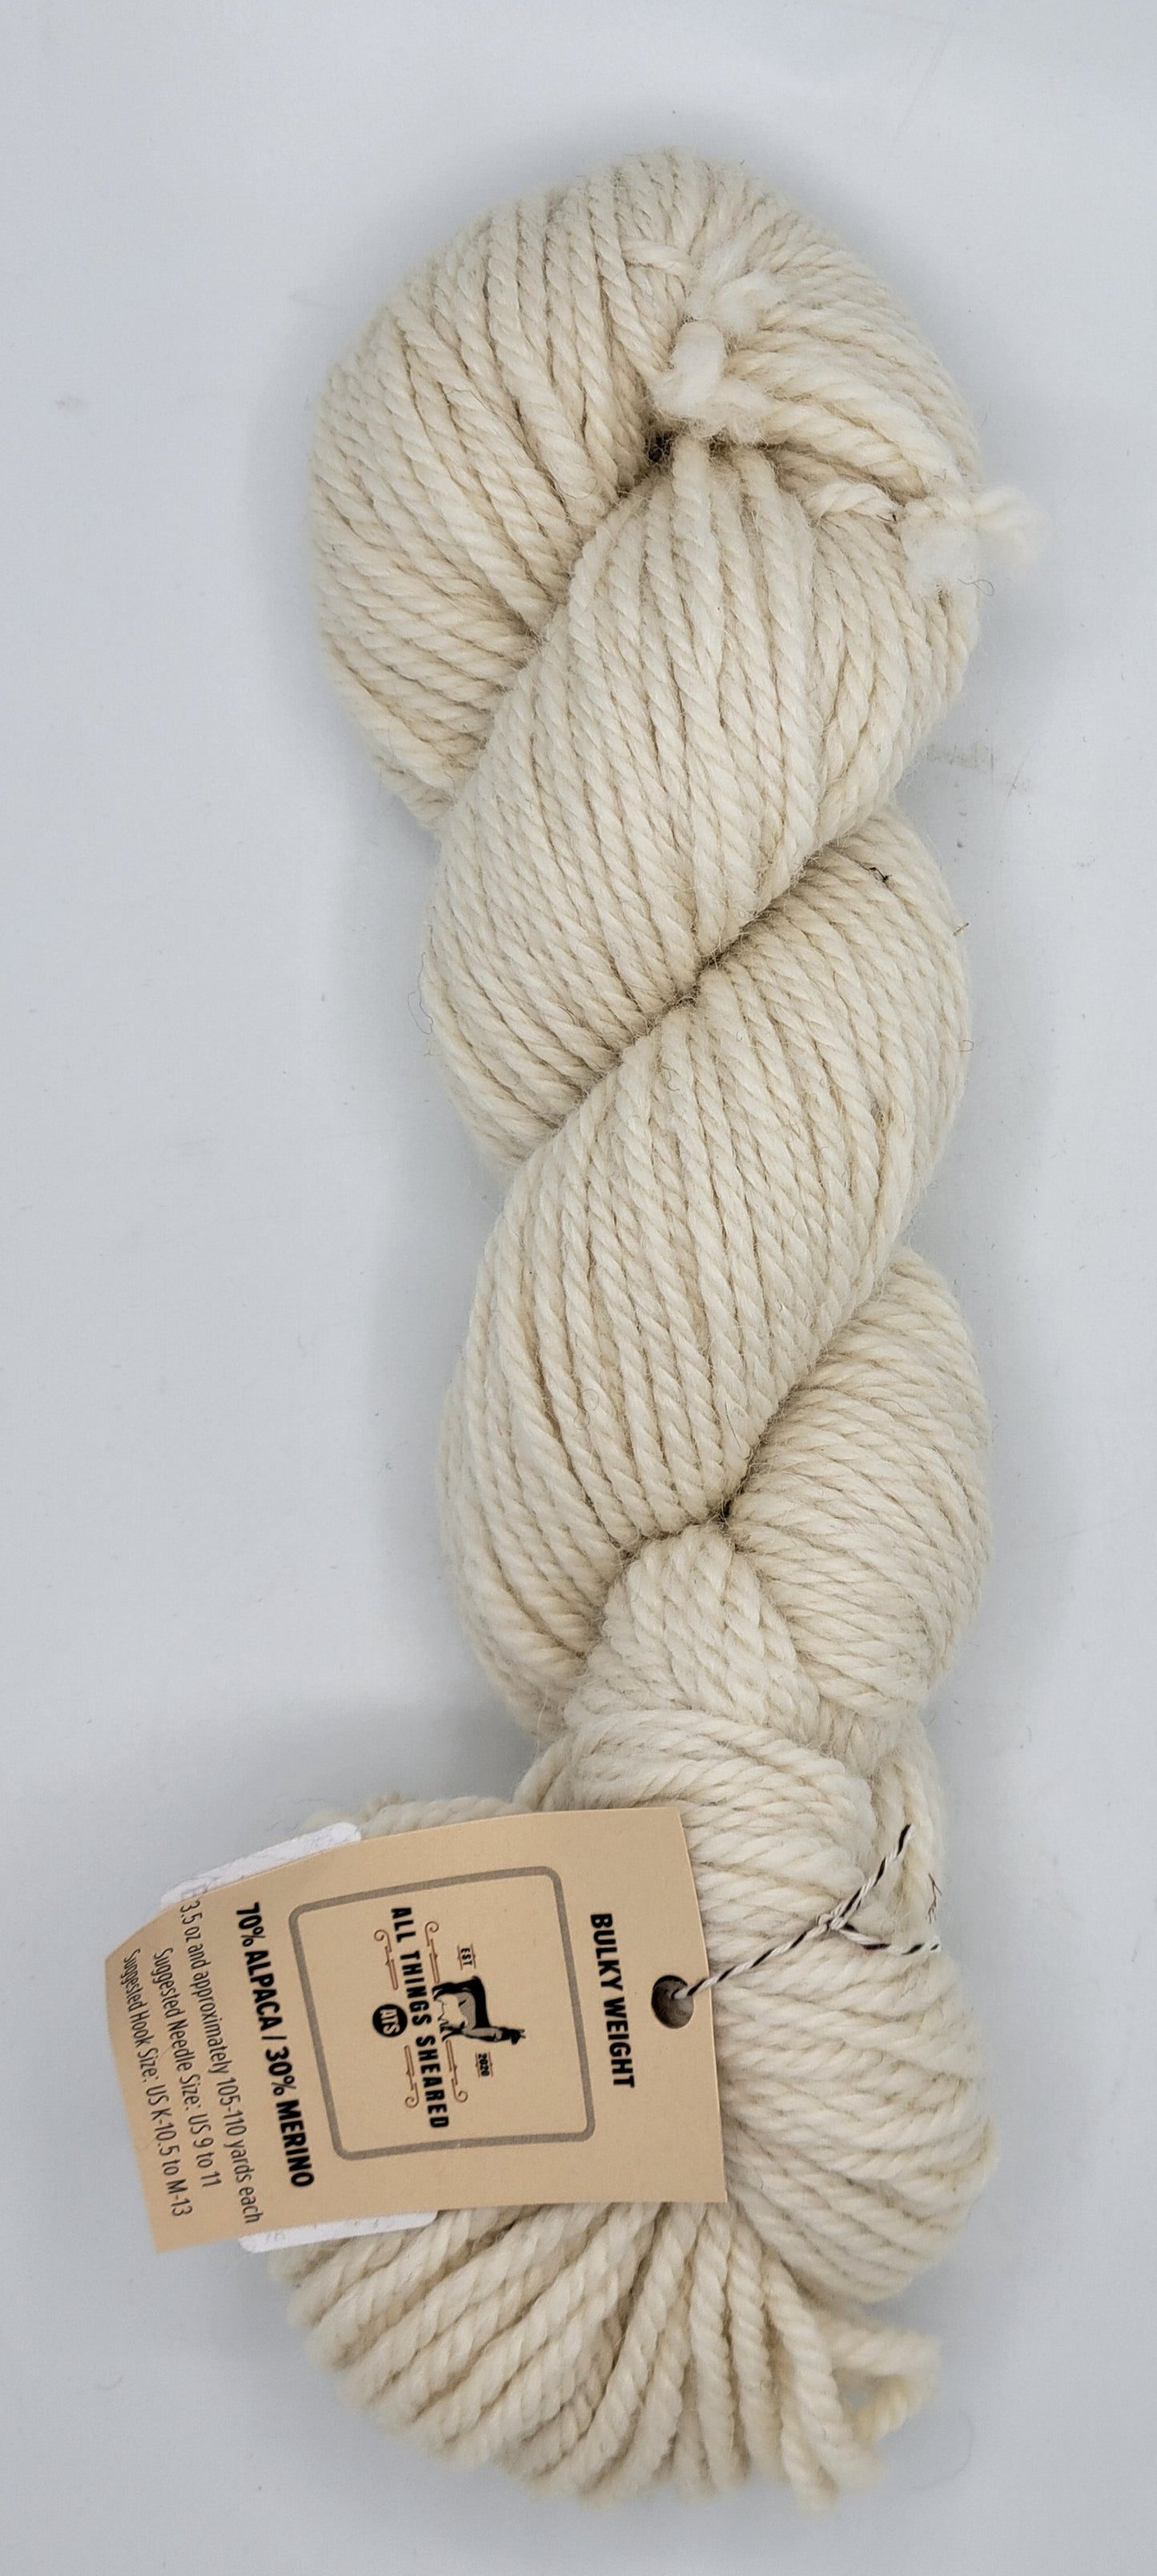 Bulky Knitter's Yarn-Natural